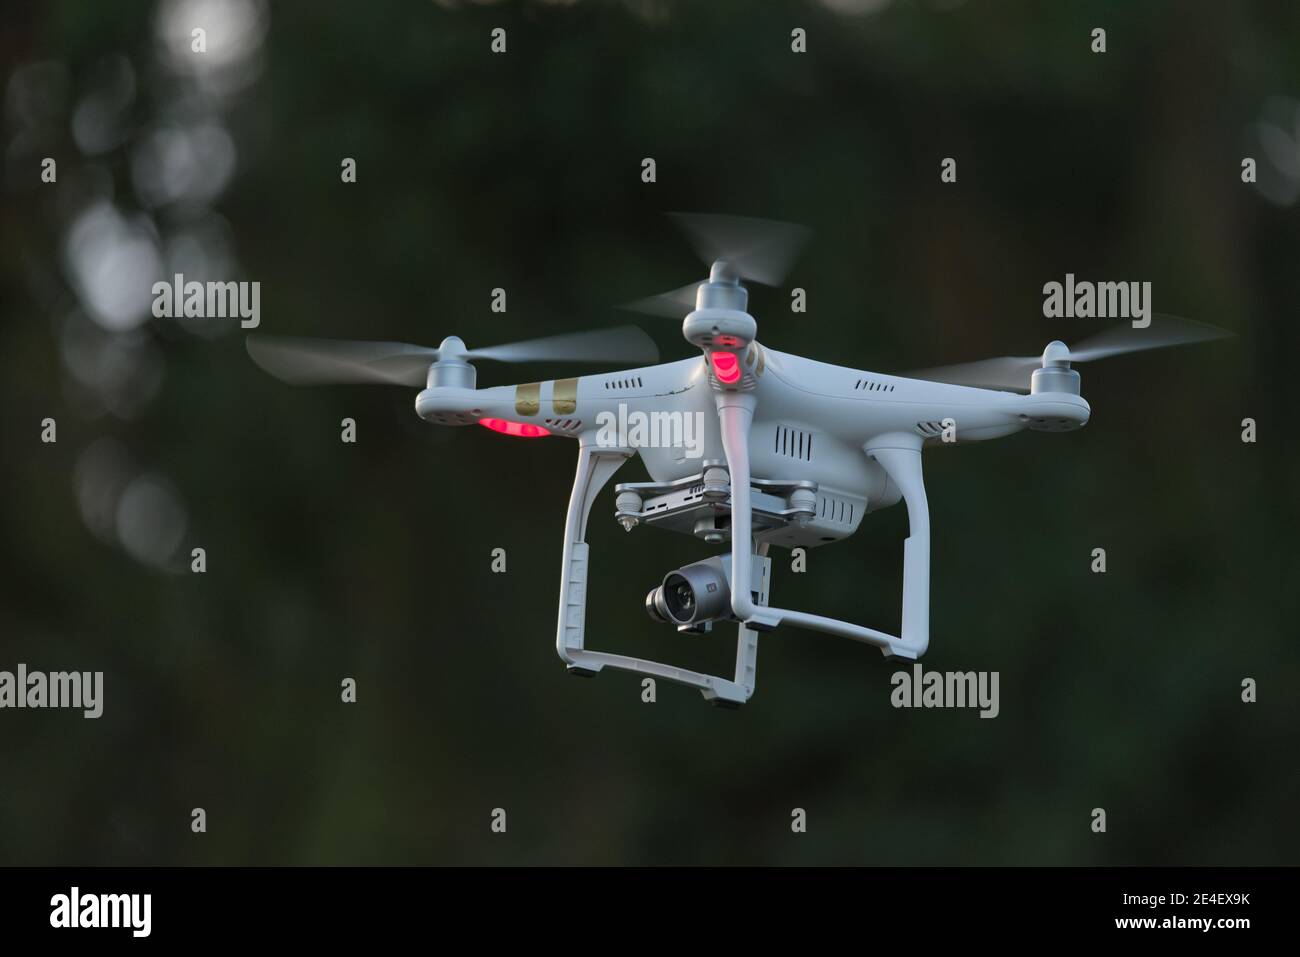 18 - vue latérale d'un drone d'appareil photo professionnel pour la vidéographie. 4 ensembles d'hélices comme son quadcopter, contrôlé par liaison radio et aussi par vidéo FPV Banque D'Images